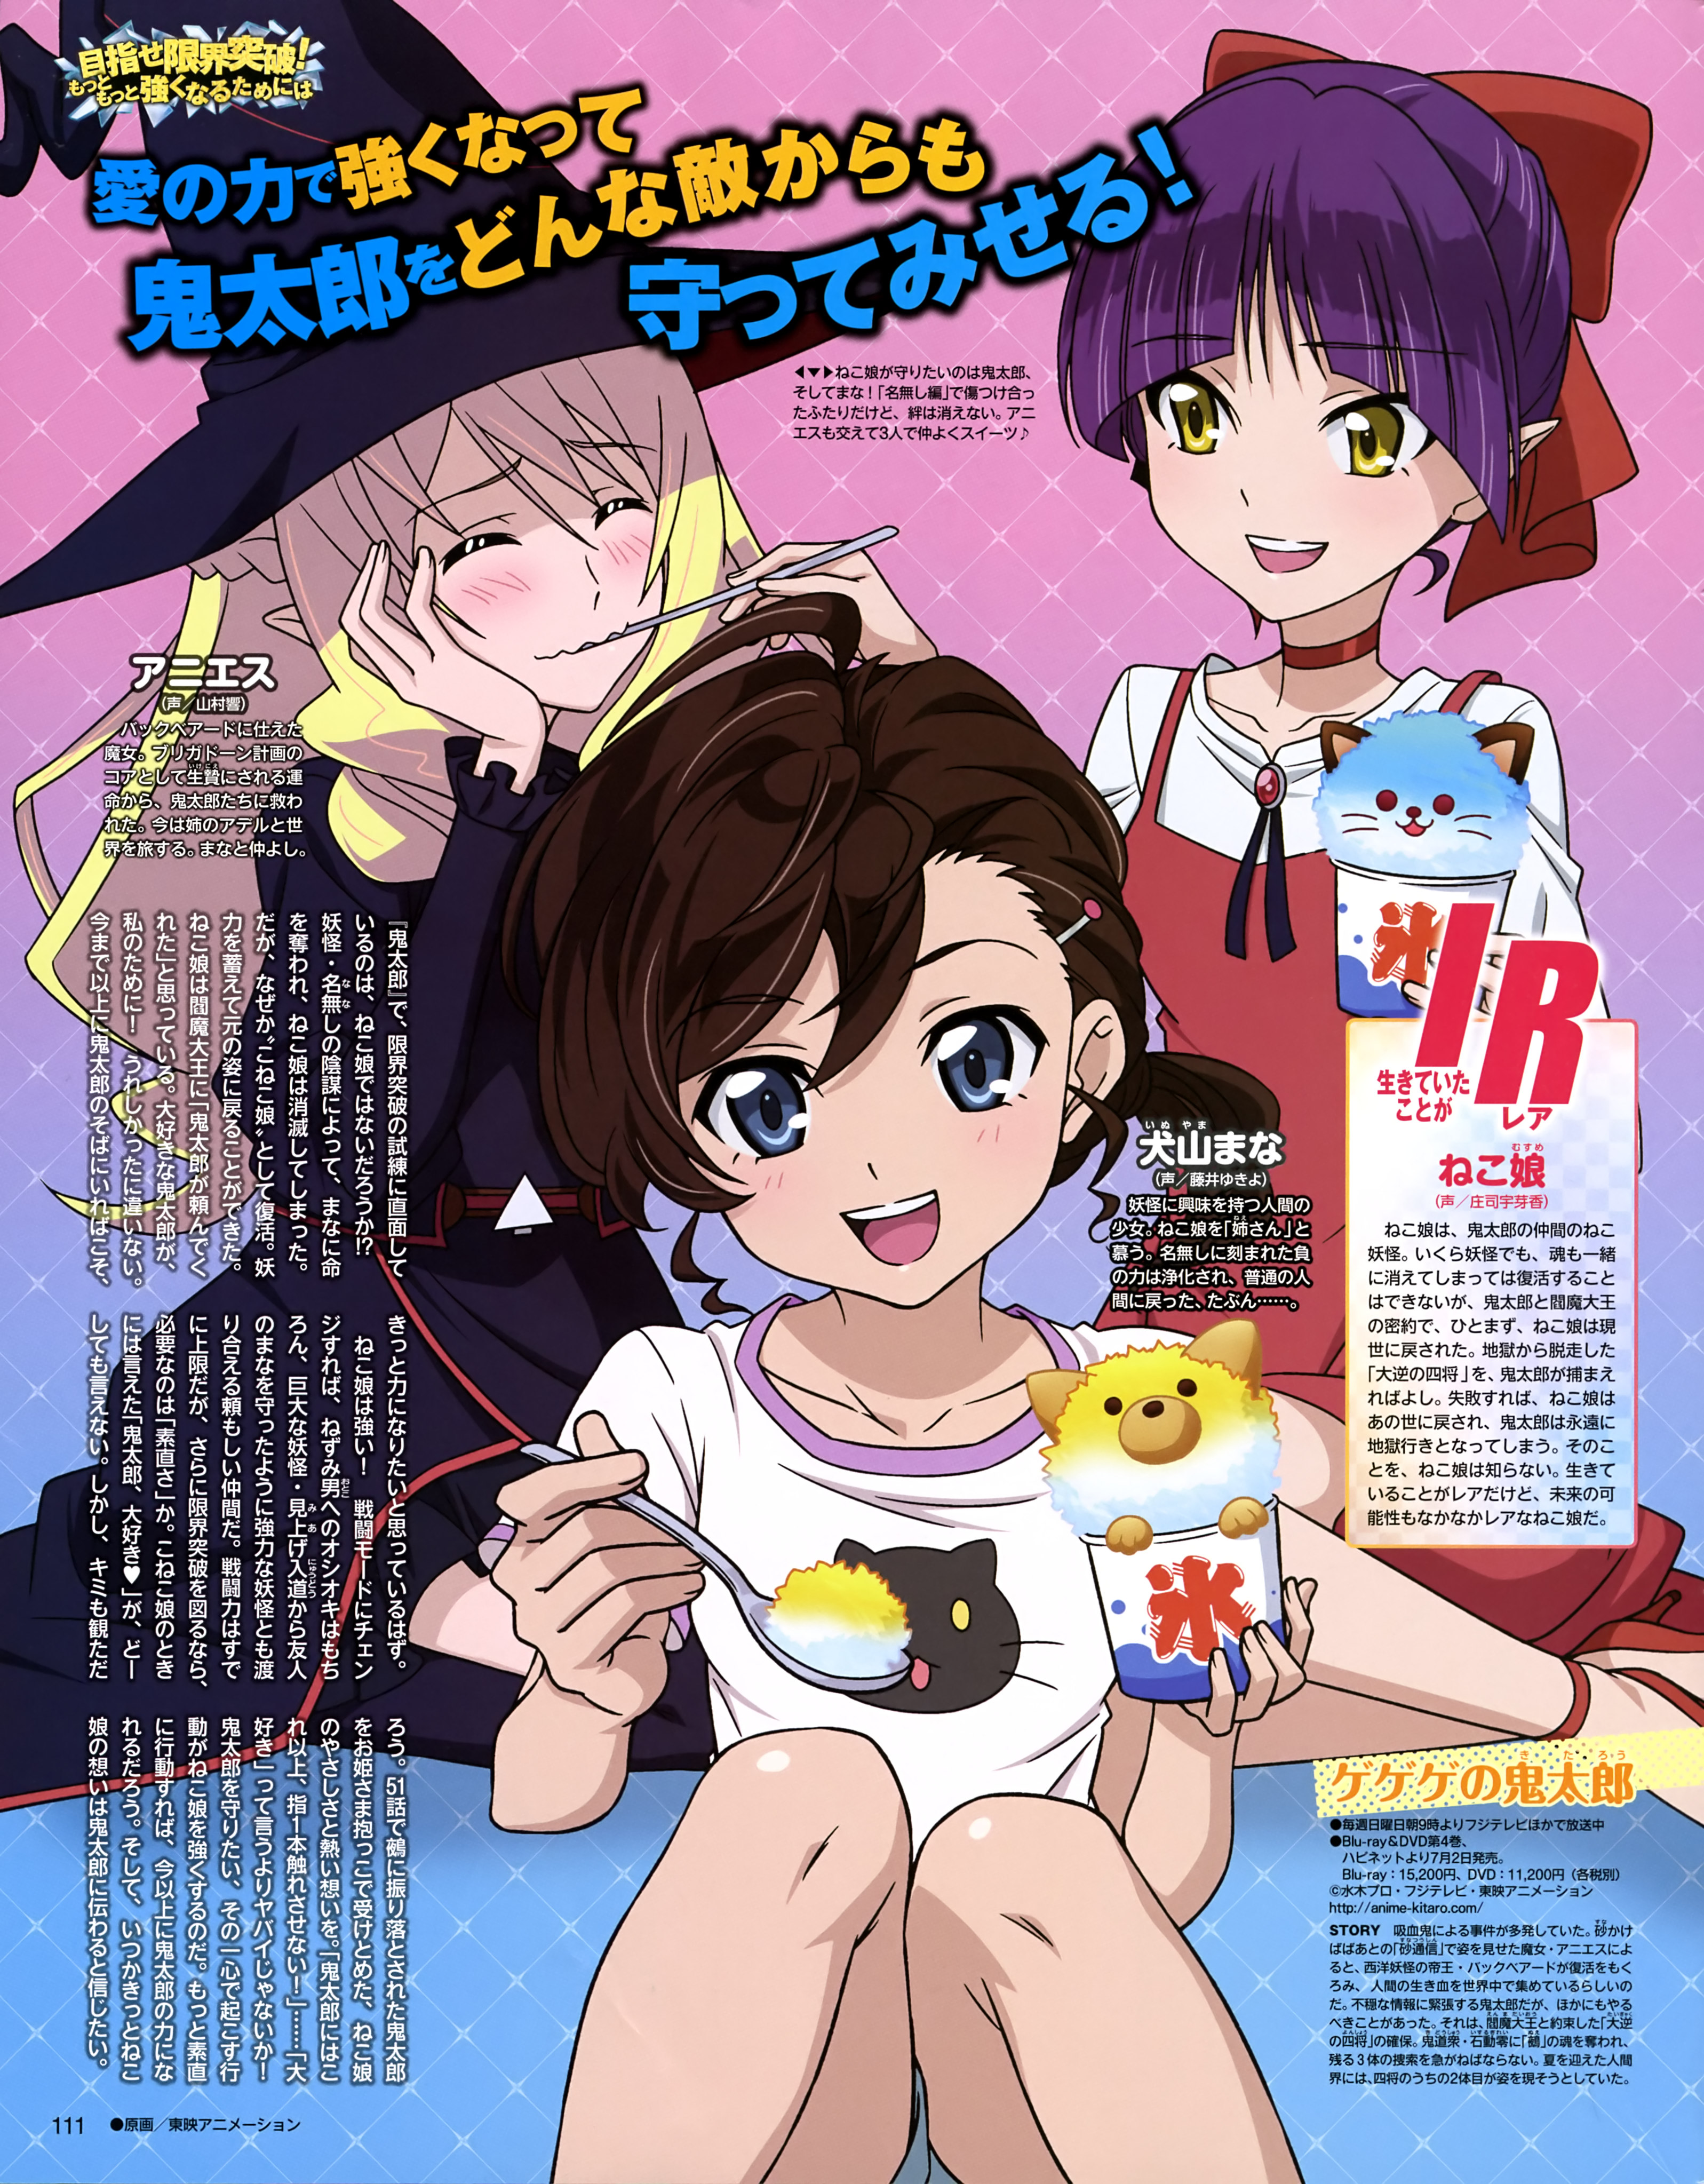 GeGeGe no Kitarou - Opening #anime #manga #gegegenokitaro #trend #anim